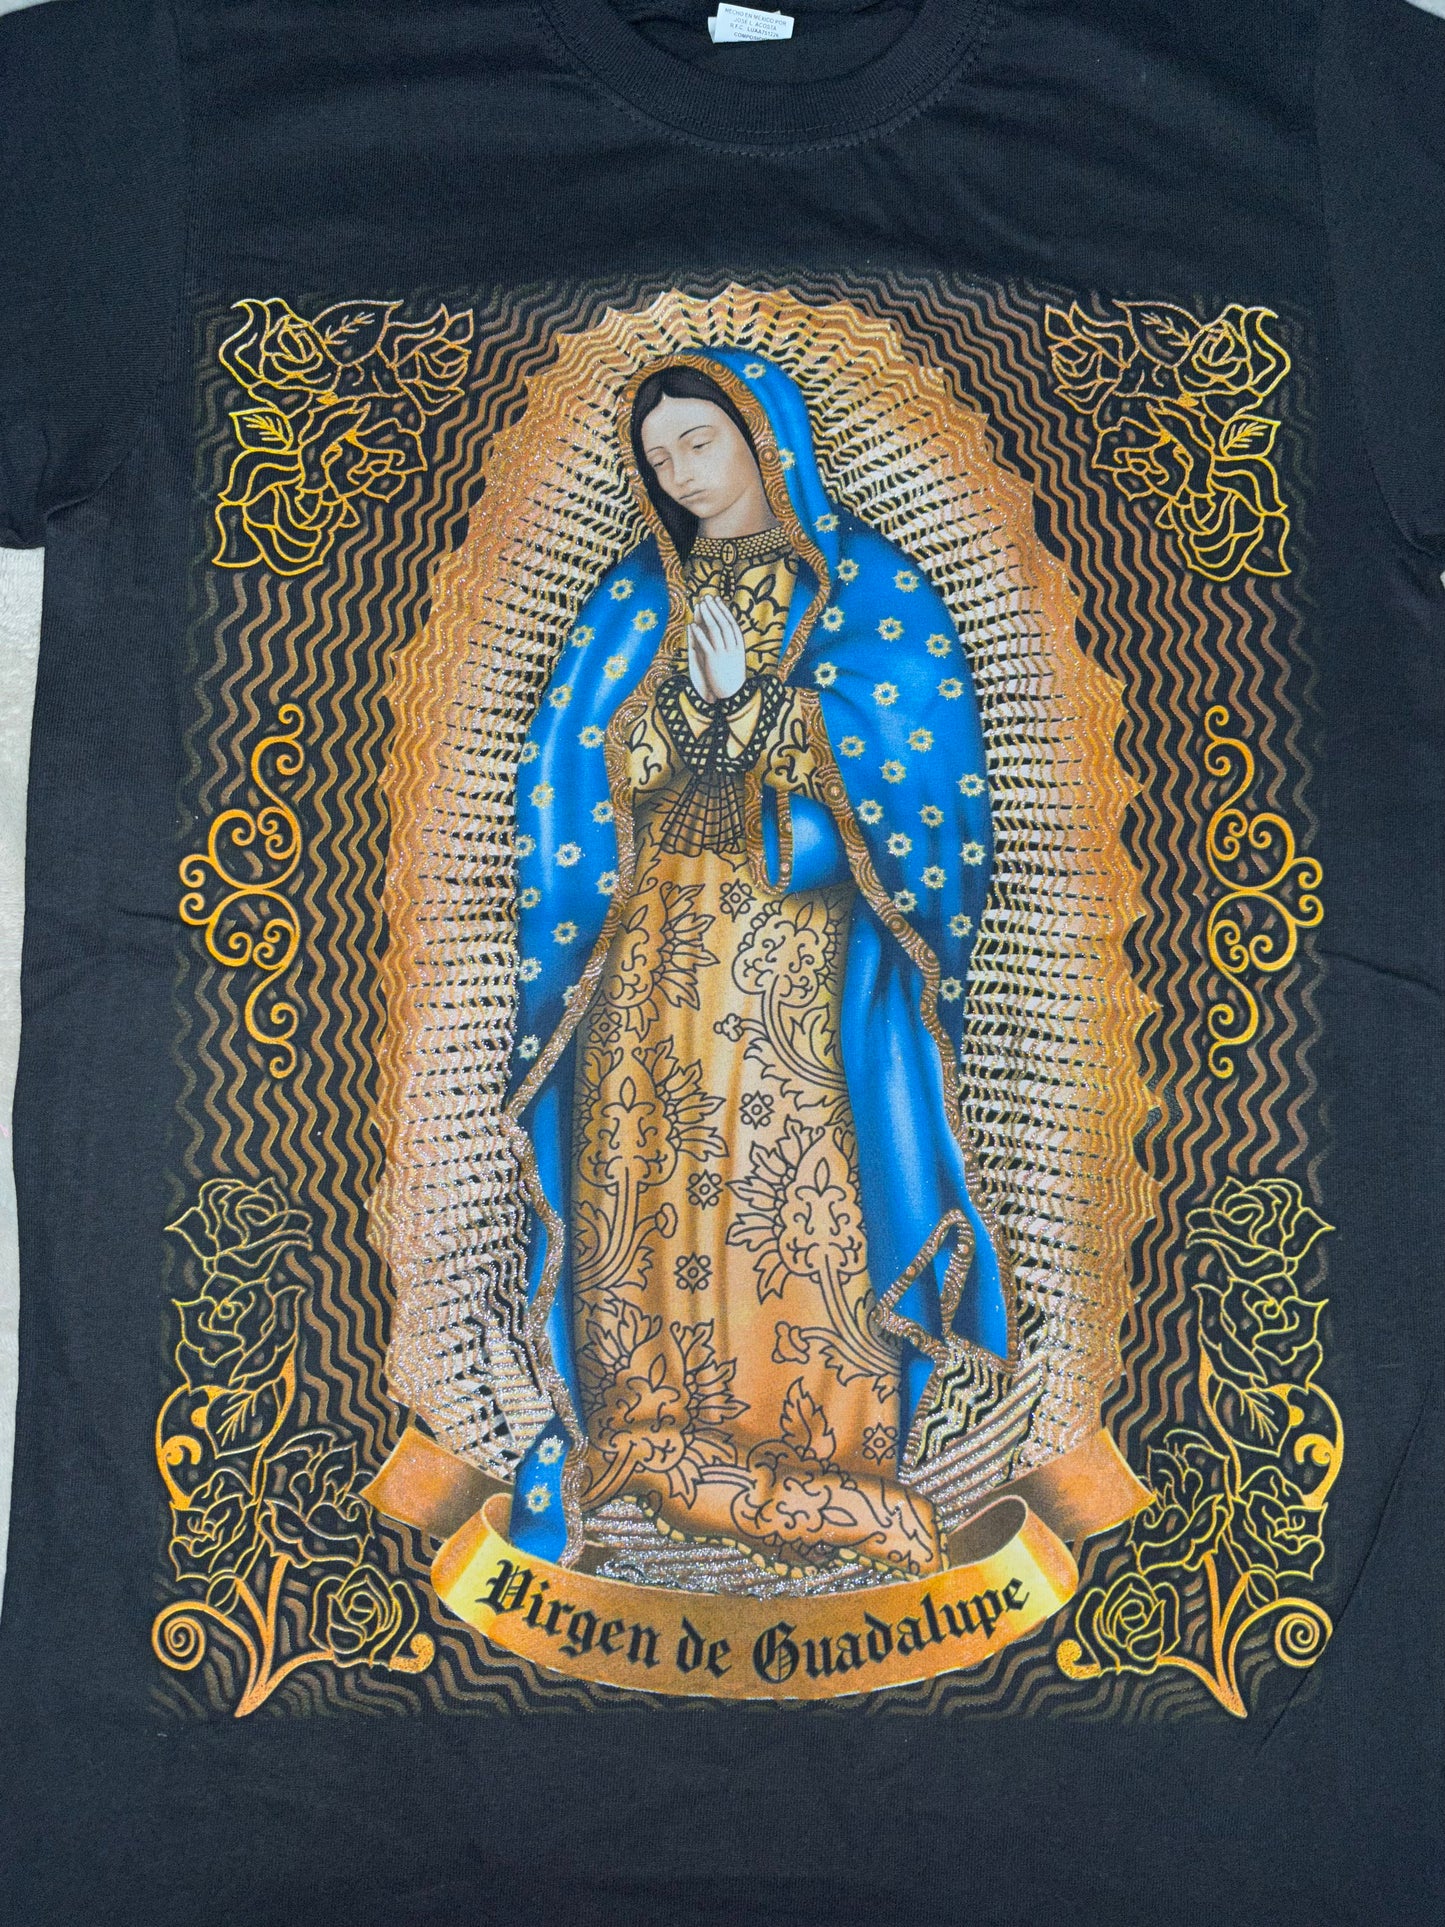 Virgen de Guadalupe shirt #29